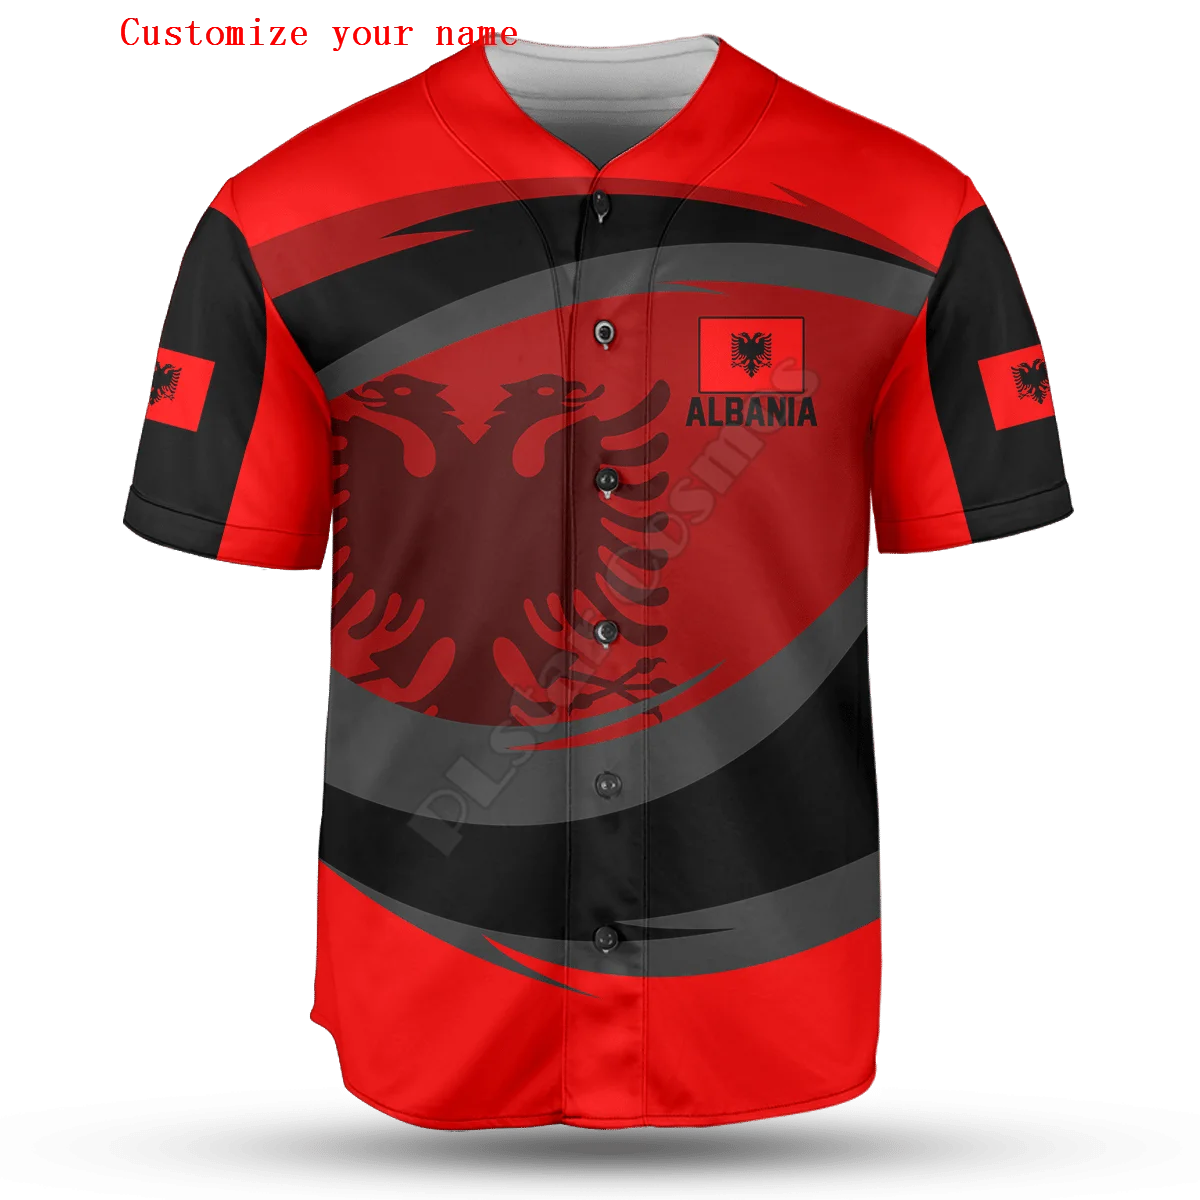 

Albania Thunder Customize Your Name Baseball Jersey Shirt Baseball Shirt 3D Printed Men's Shirt Casual Shirts hip hop Tops